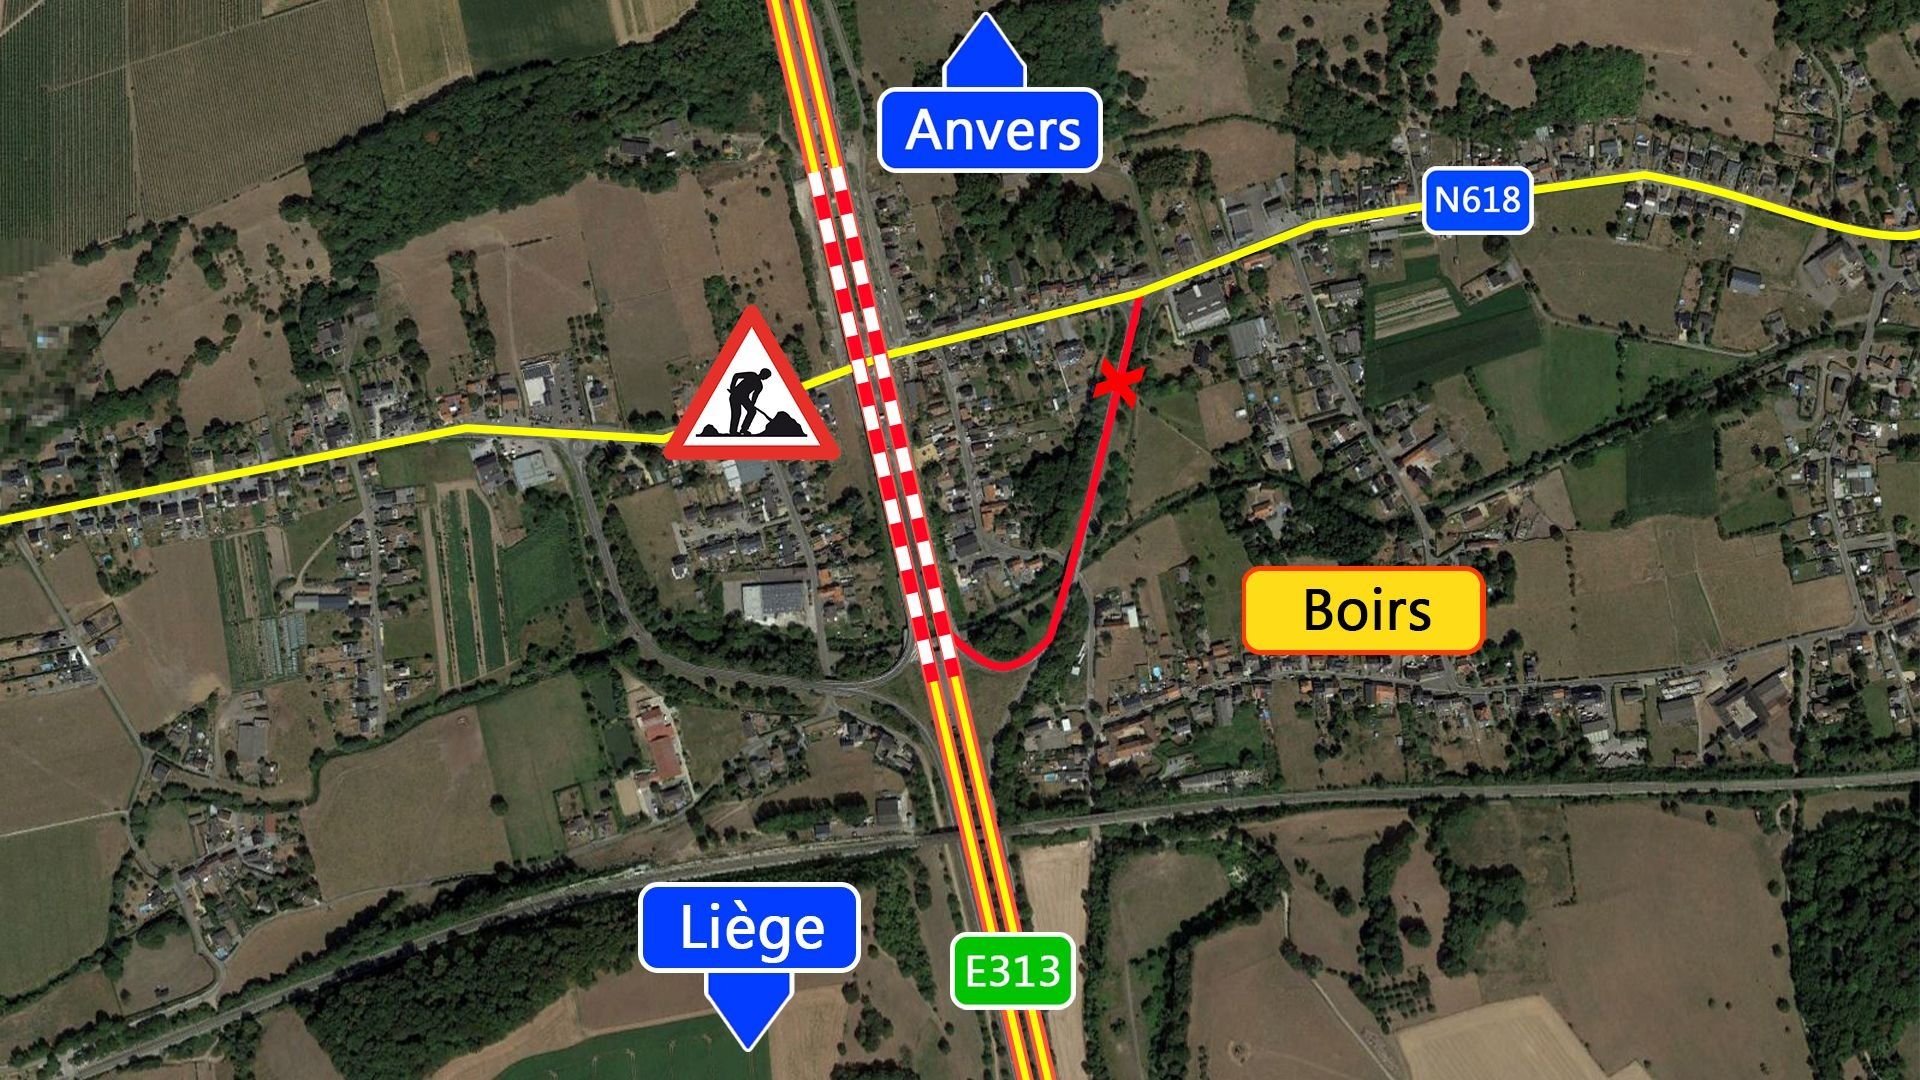 Réfection du viaduc de Boirs sur l'E313 Liège - Anvers 